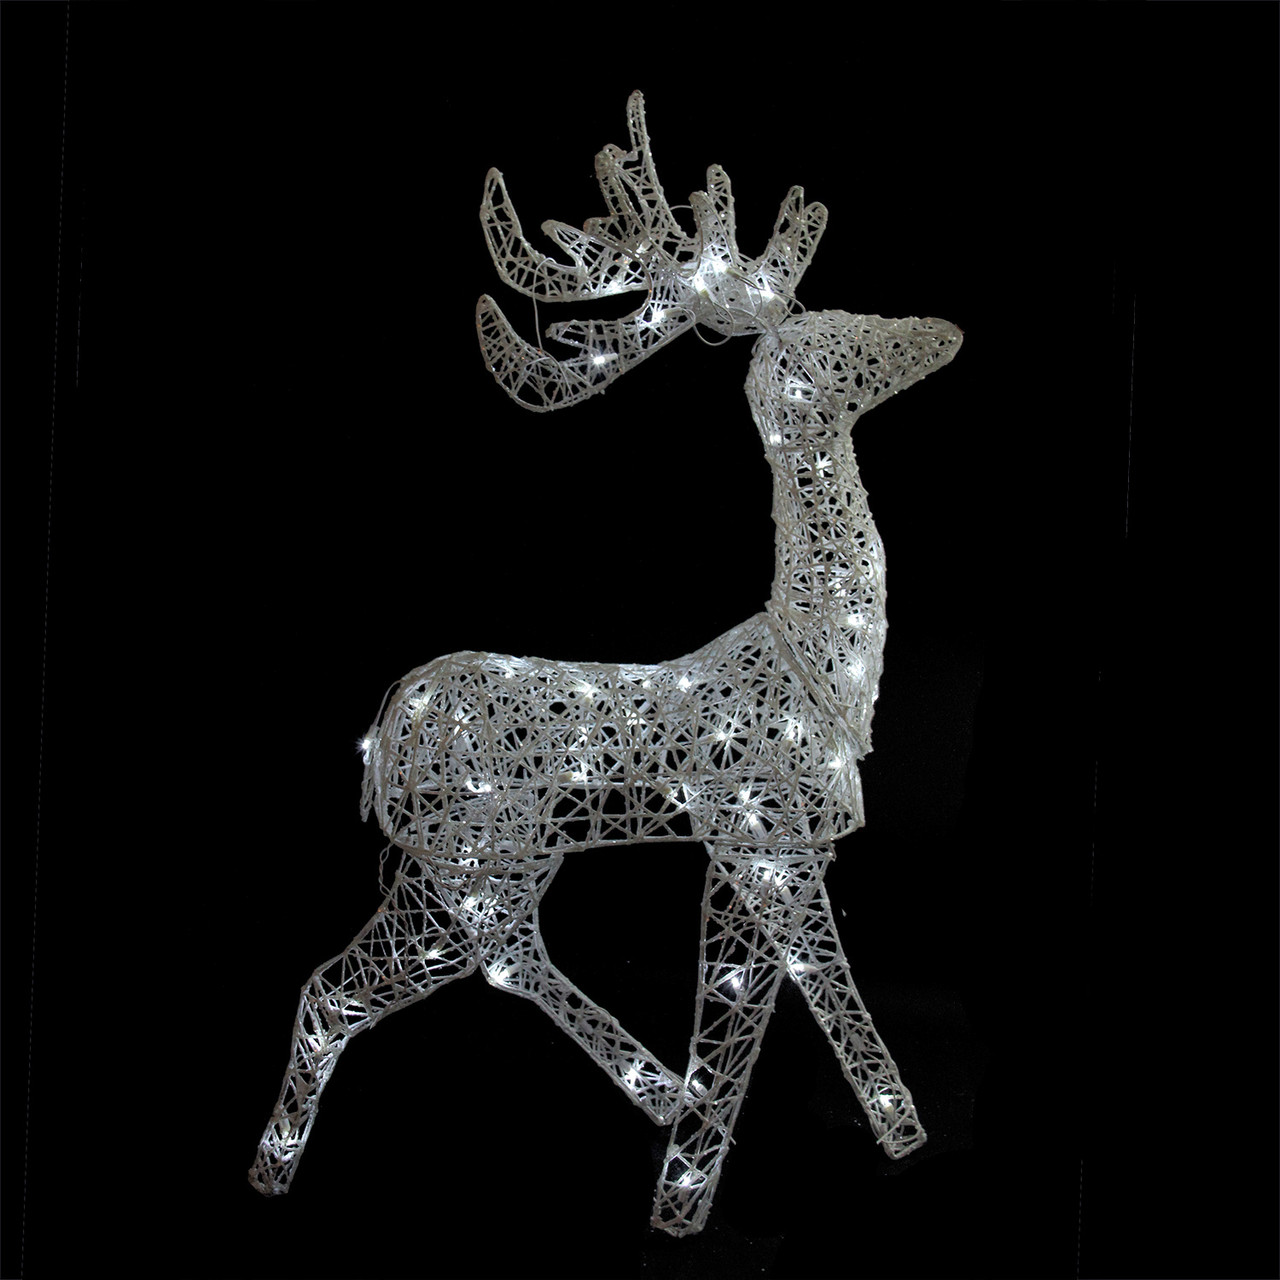 52" LED Lighted Elegant White Glittered Reindeer Christmas Outdoor